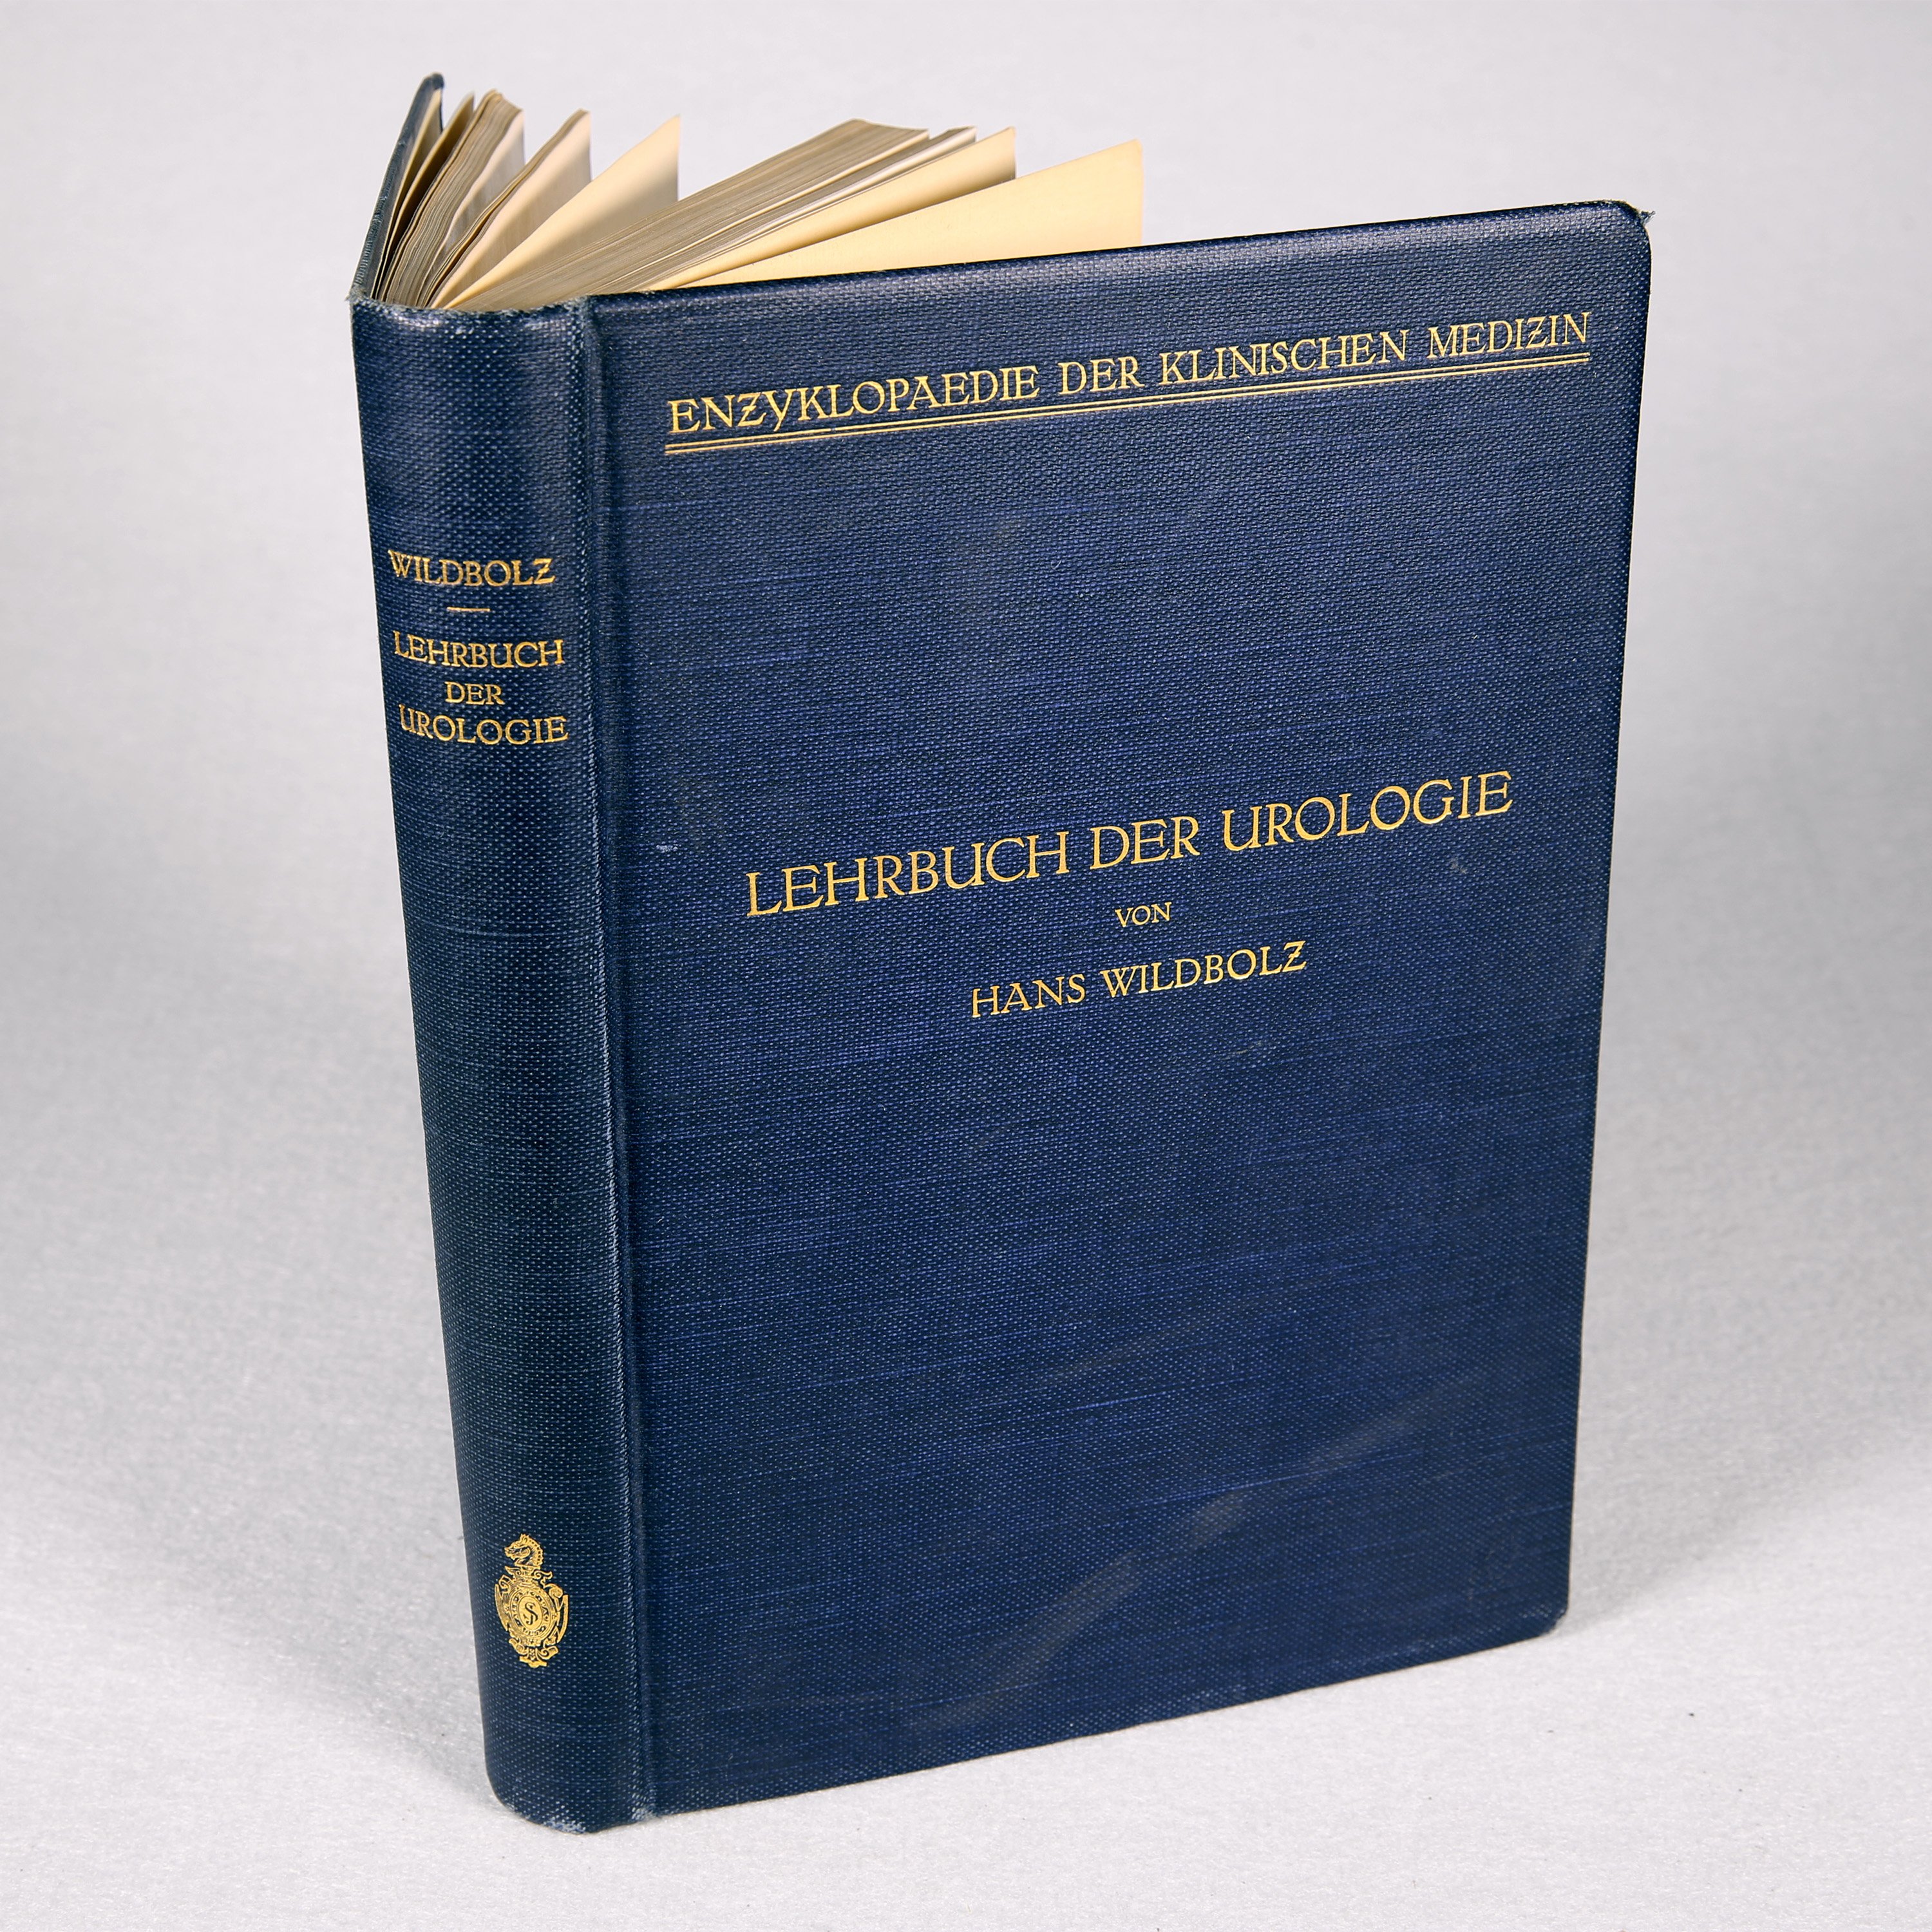 Hans Wildbolz, Lehrbuch der Urologie (Wilhelm-Fabry-Museum CC BY-NC-SA)